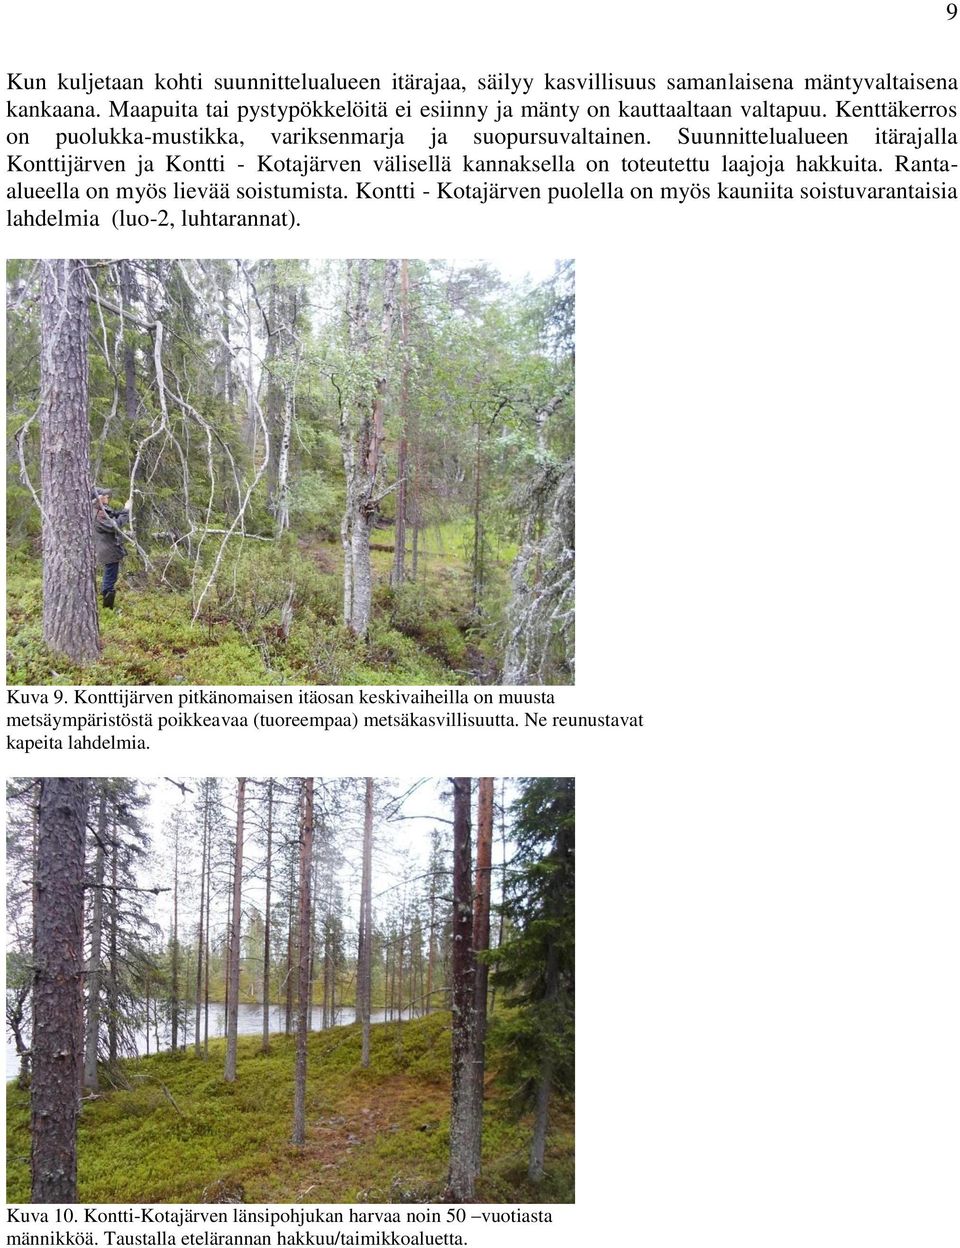 Rantaalueella on myös lievää soistumista. Kontti - Kotajärven puolella on myös kauniita soistuvarantaisia lahdelmia (luo-2, luhtarannat). Kuva 9.